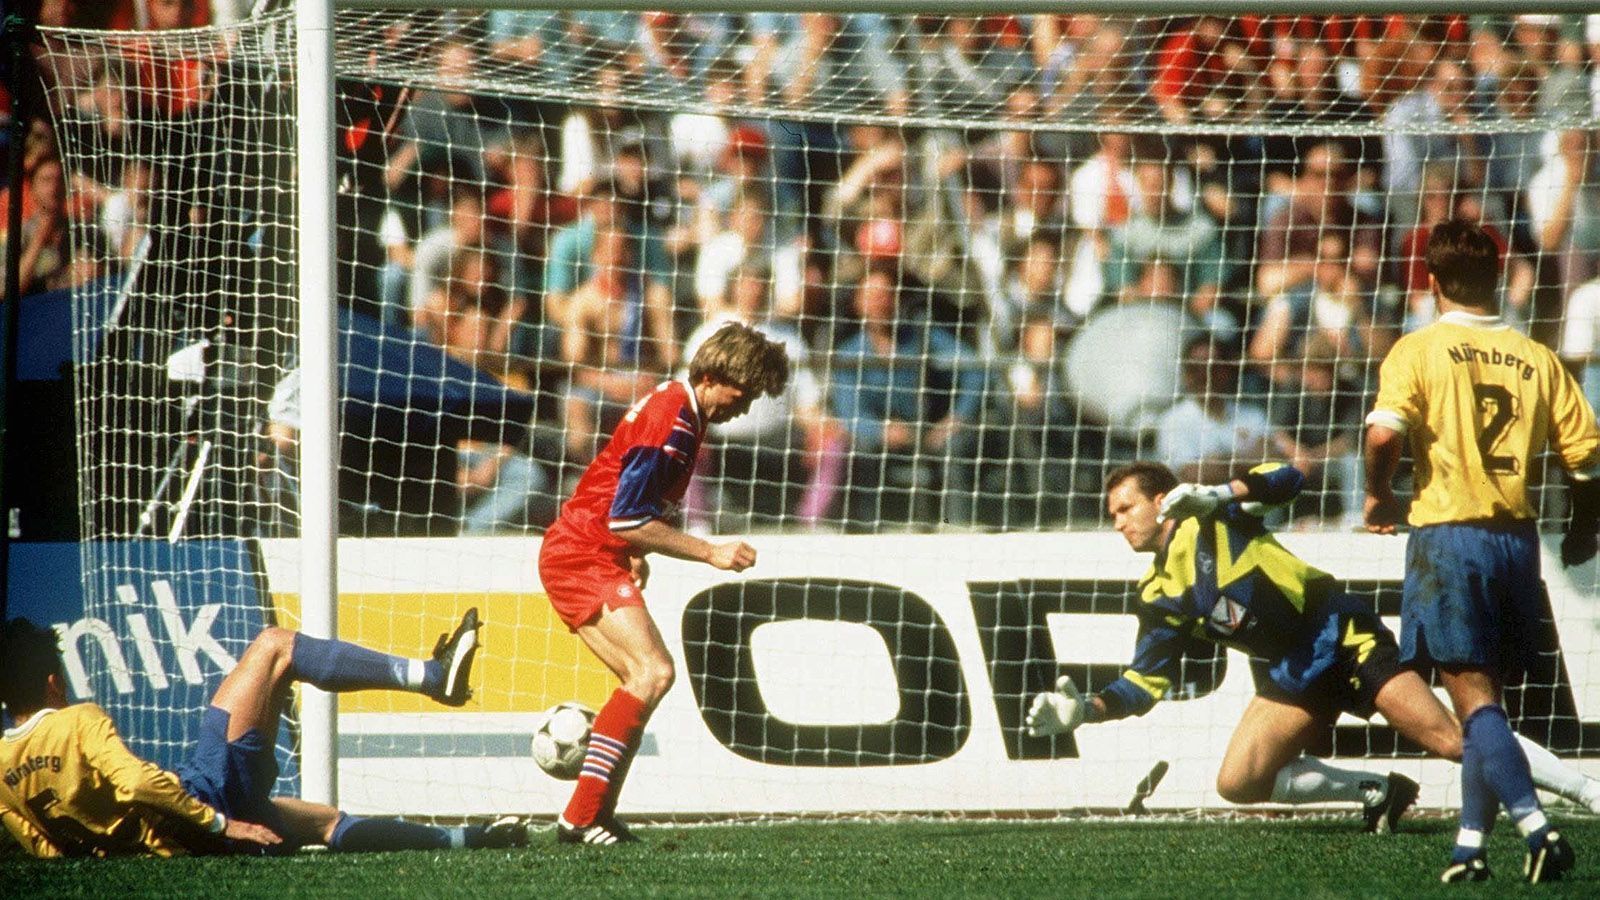 
                <strong>Fußball</strong><br>
                Im April 1994 schoss Thomas Helmer vom FC Bayern München das wohl bekannteste Phantomtor der deutschen Fußballgeschichte: Beim 2:1 gegen den 1. FC Nürnberg wertete das Schiedsrichtergespann einen Schuss des Verteidigers, der am Pfosten vorbeiging, als Tor. Der DFB ließ das Spiel wiederholen. Die Bayern siegten 5:0.
              